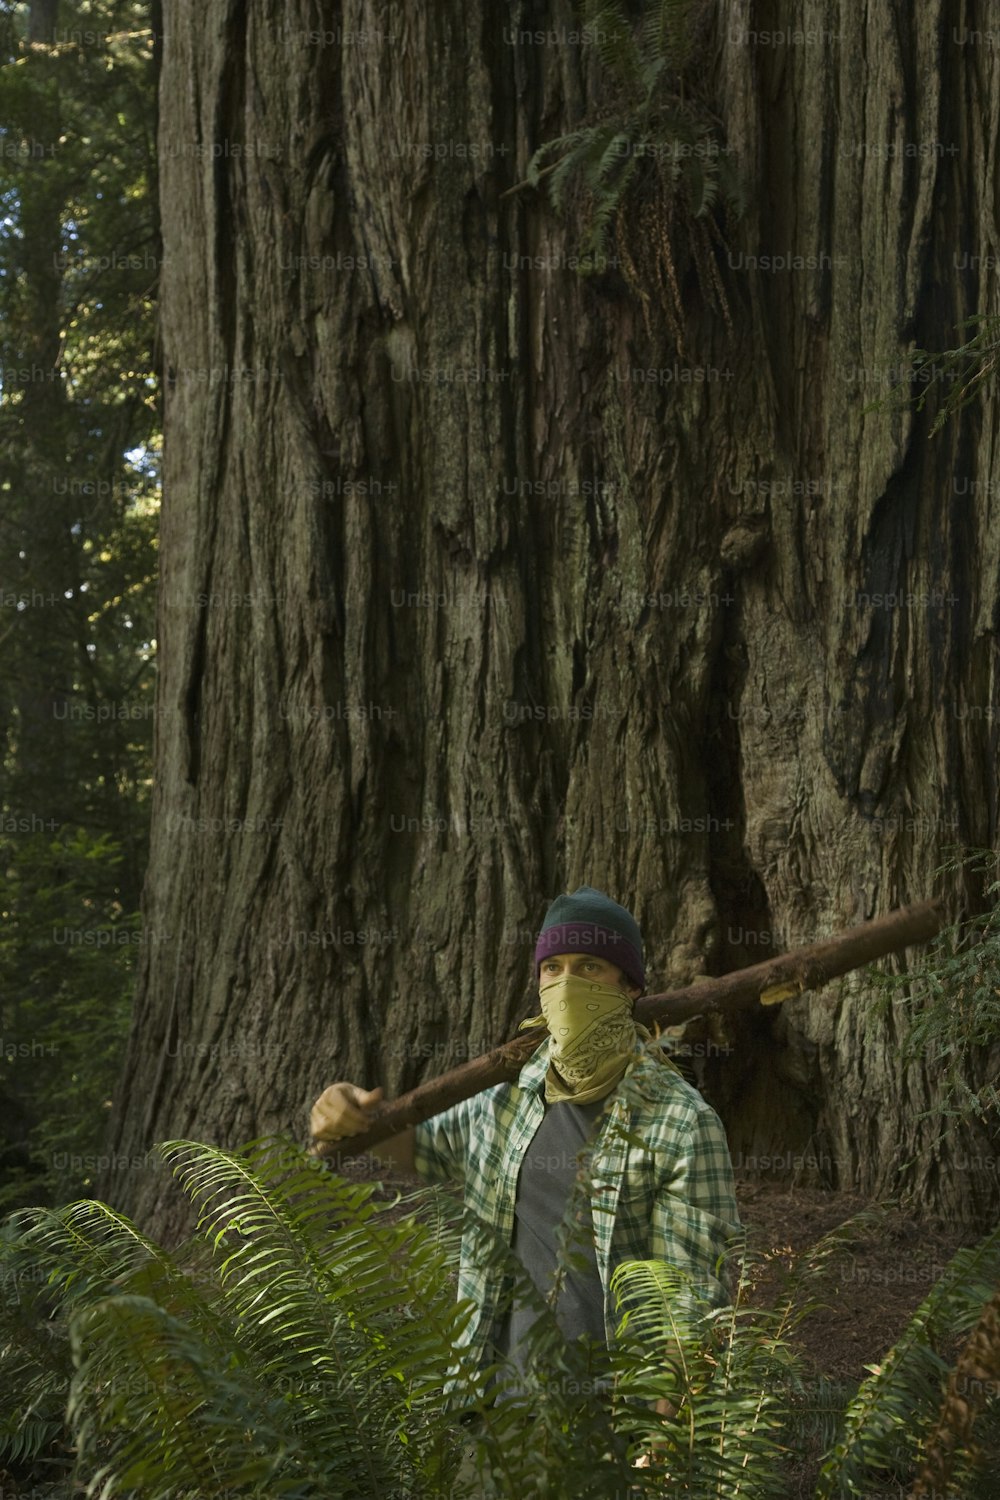 격자 무늬 셔츠를 입고 녹색 격자 무늬 모자를 쓴 남자가 앞에 서 있습니다.